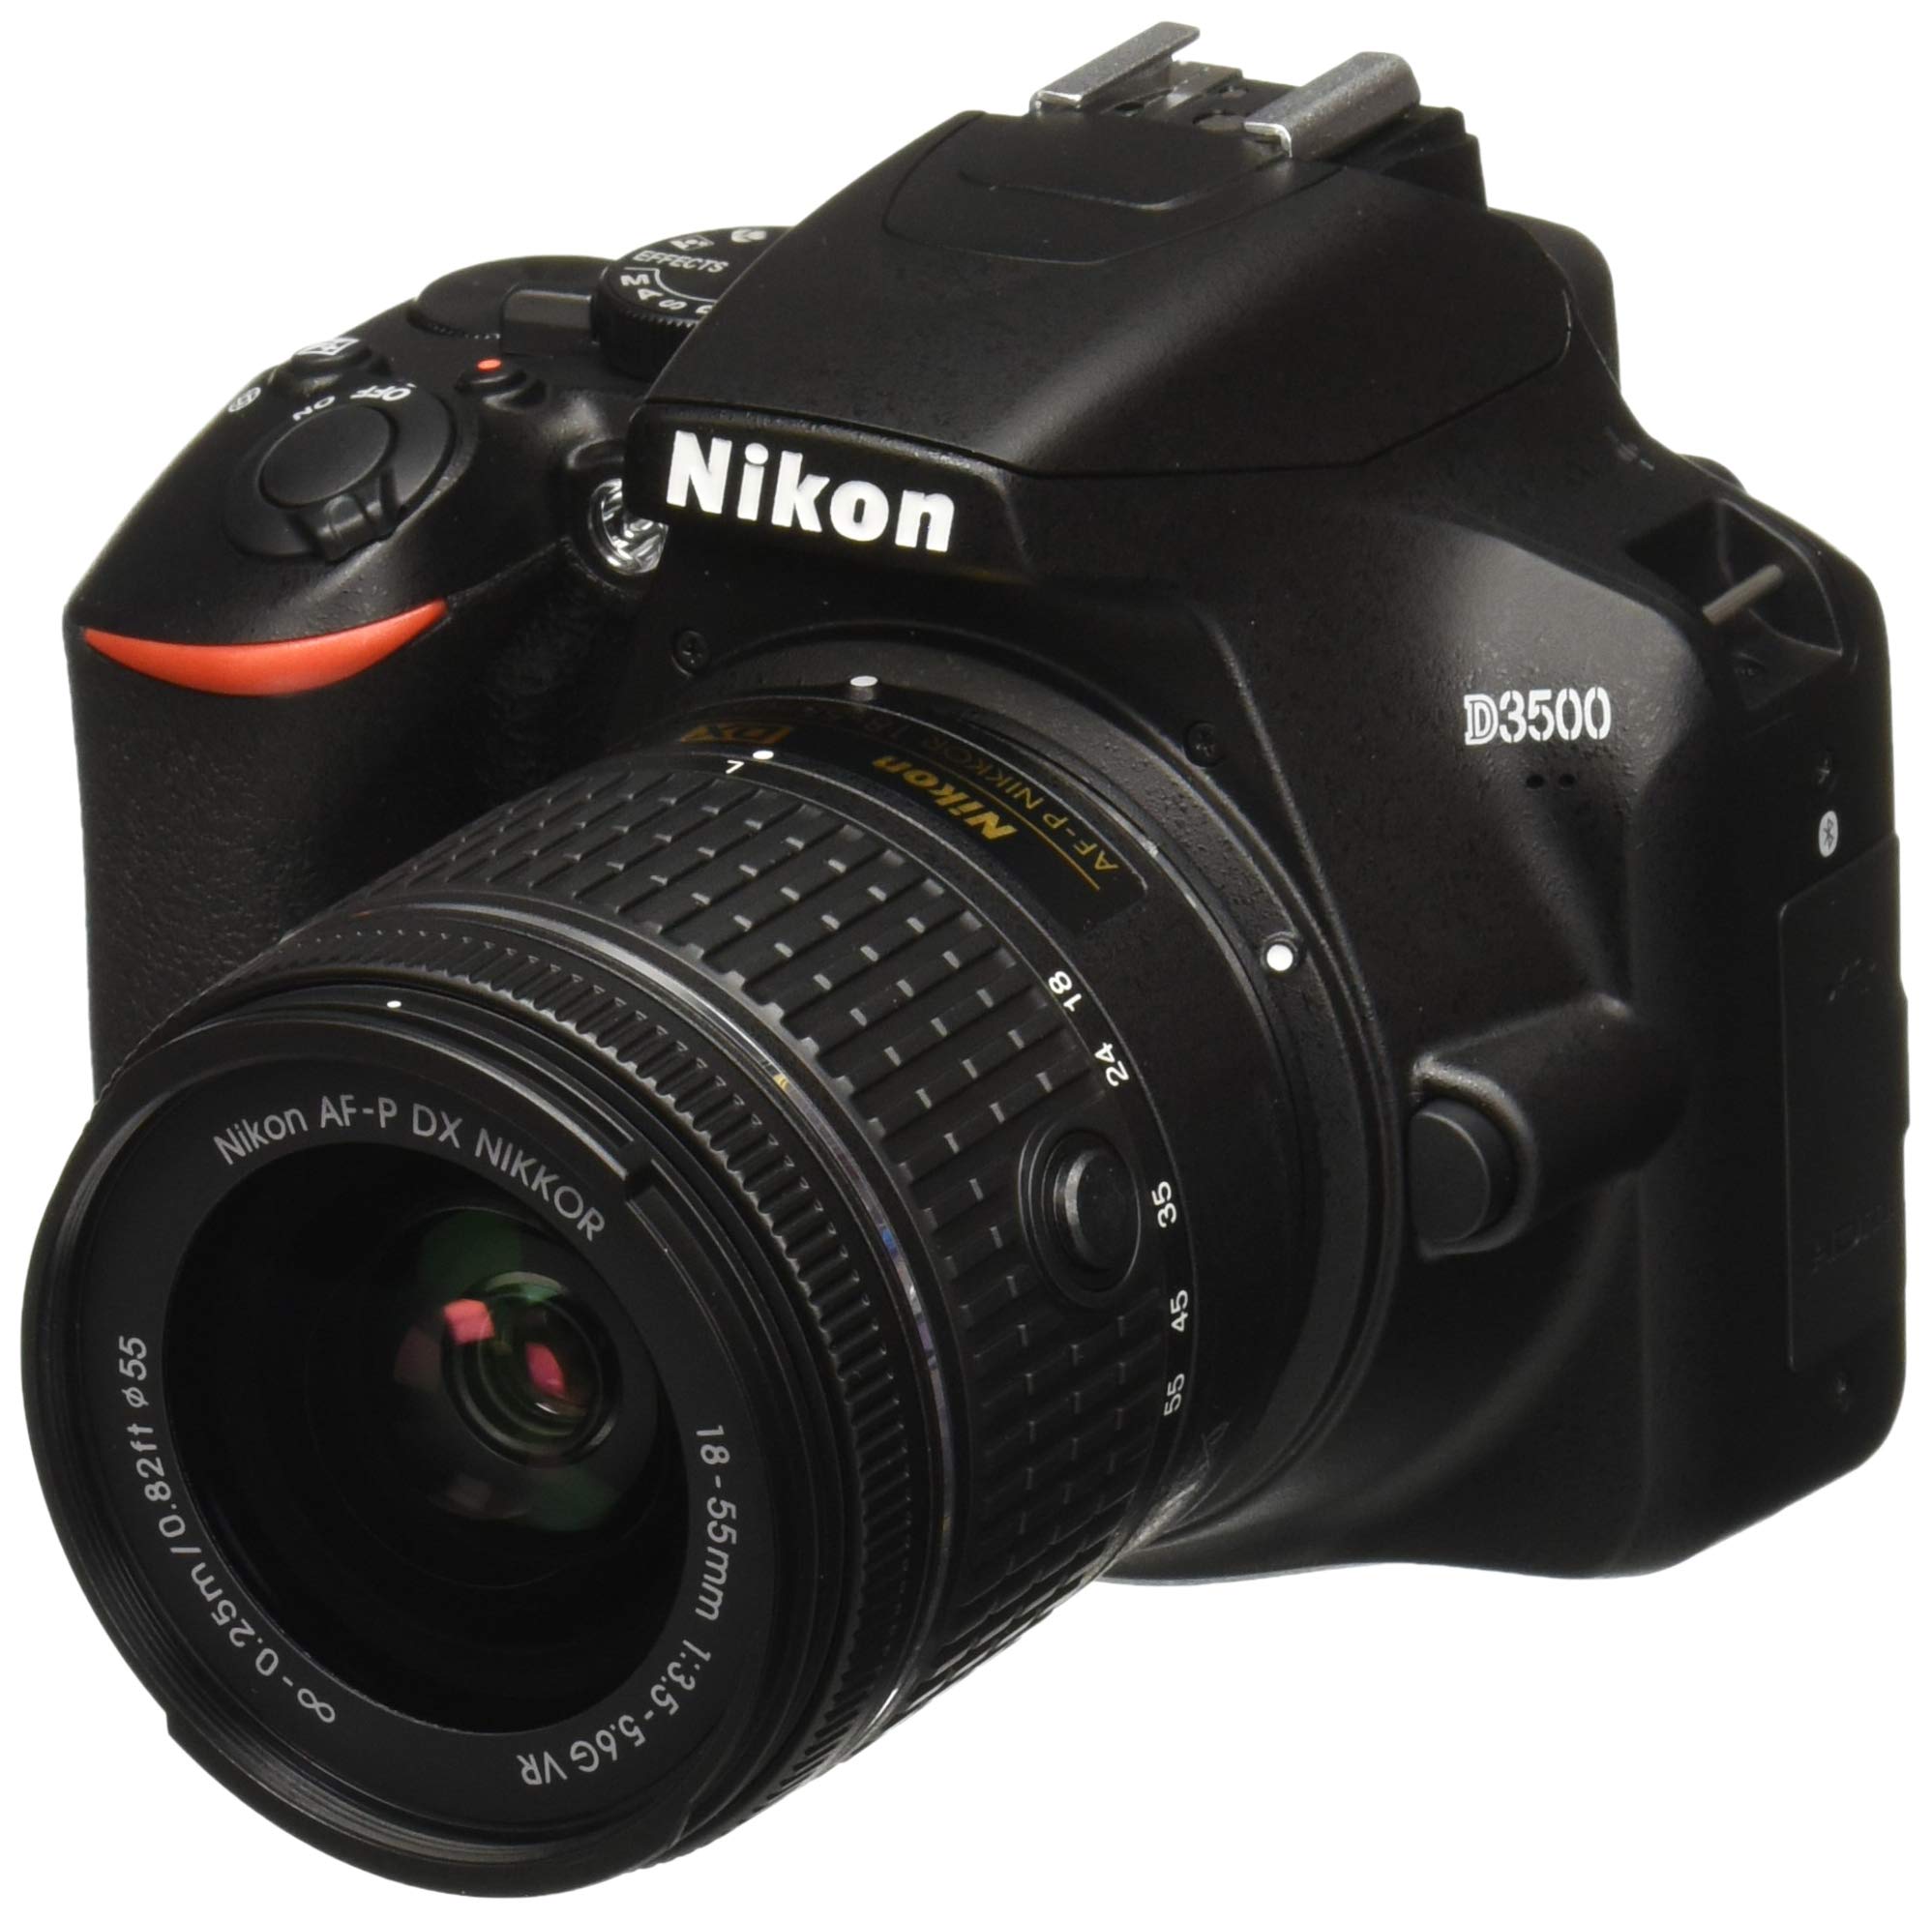 Nikon D3500 W/ AF-P DX Nikkor 18-55mm f/3.5-5.6G VR Black - image 1 of 10